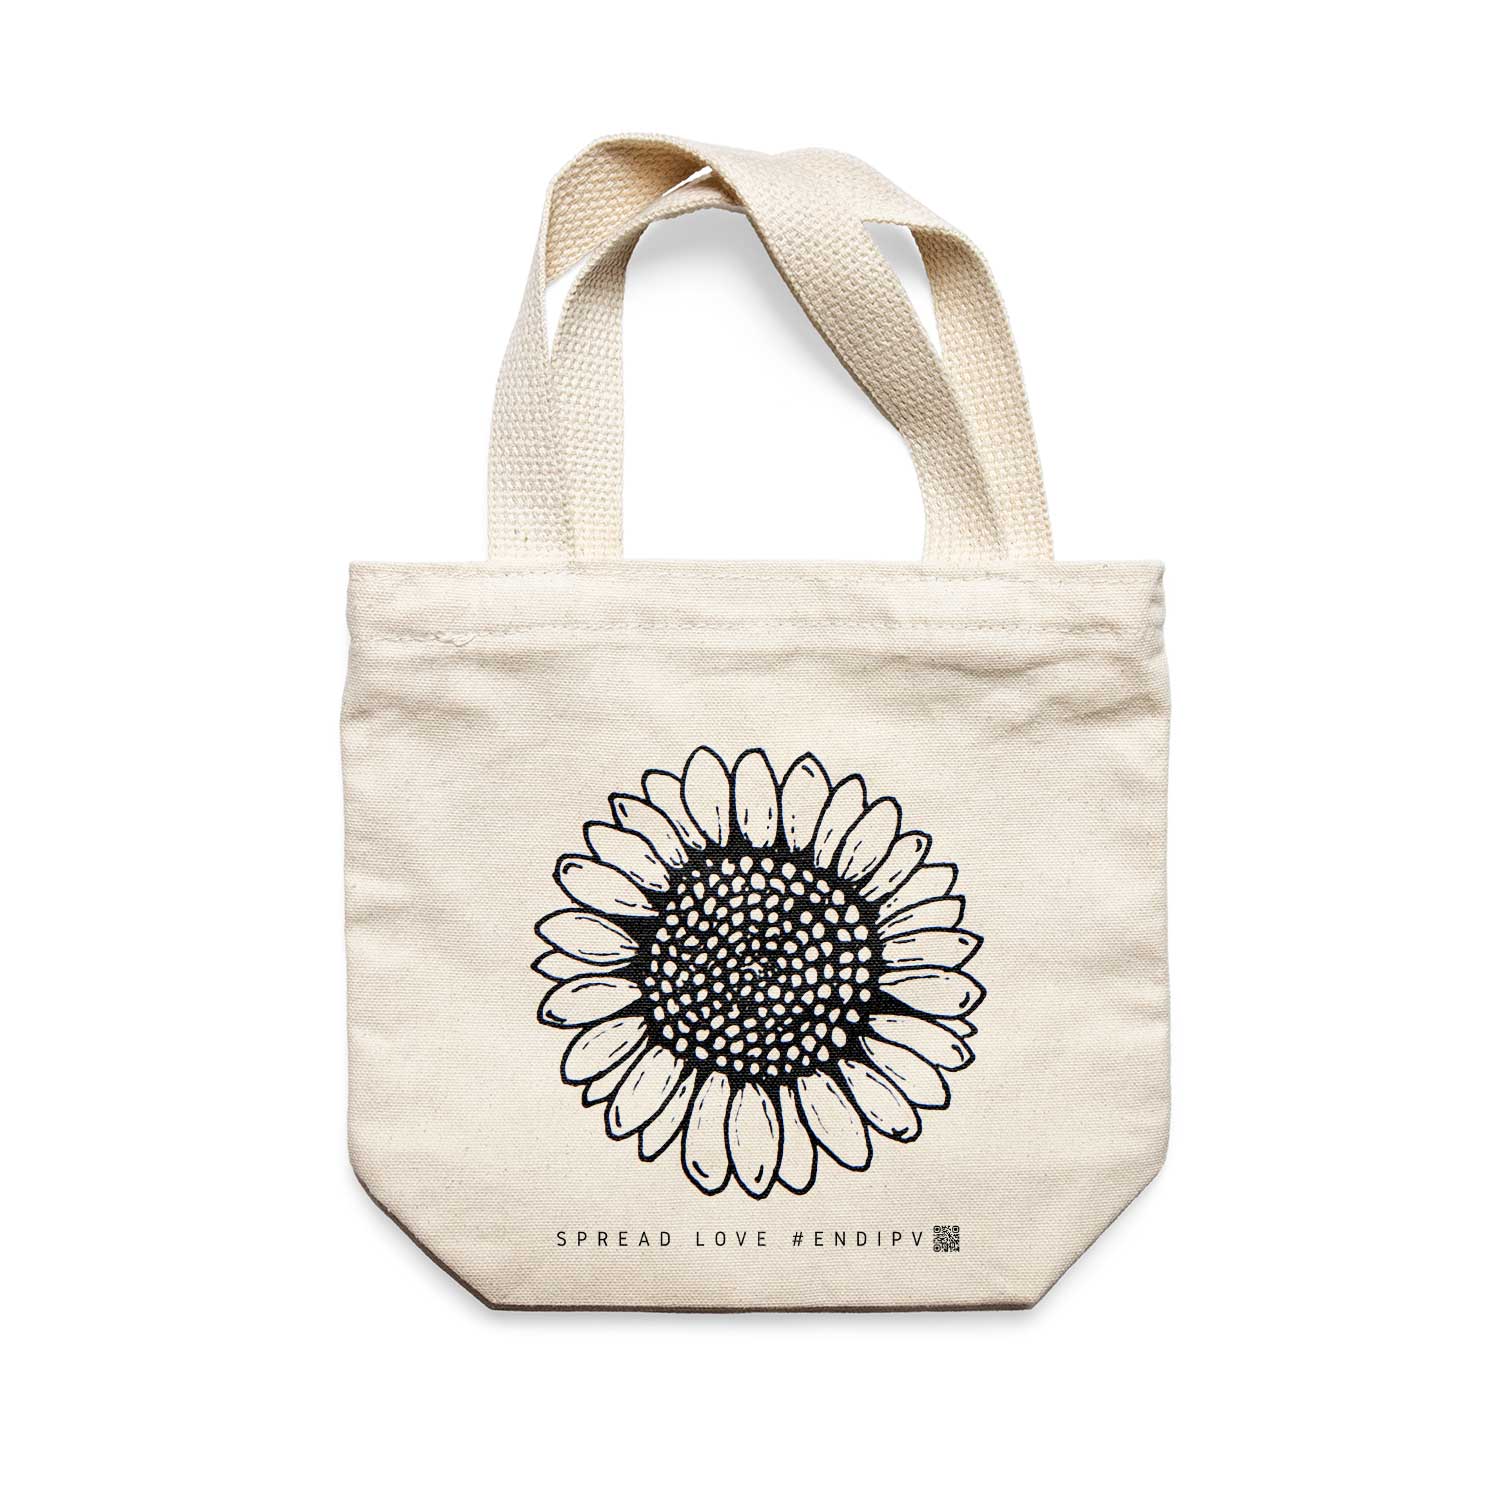 תיק צד לנשים וגברים מבד 100% כותנה טבעית בעיצוב Flower - Hannah Tote Bag מציור מקורי של גאיה